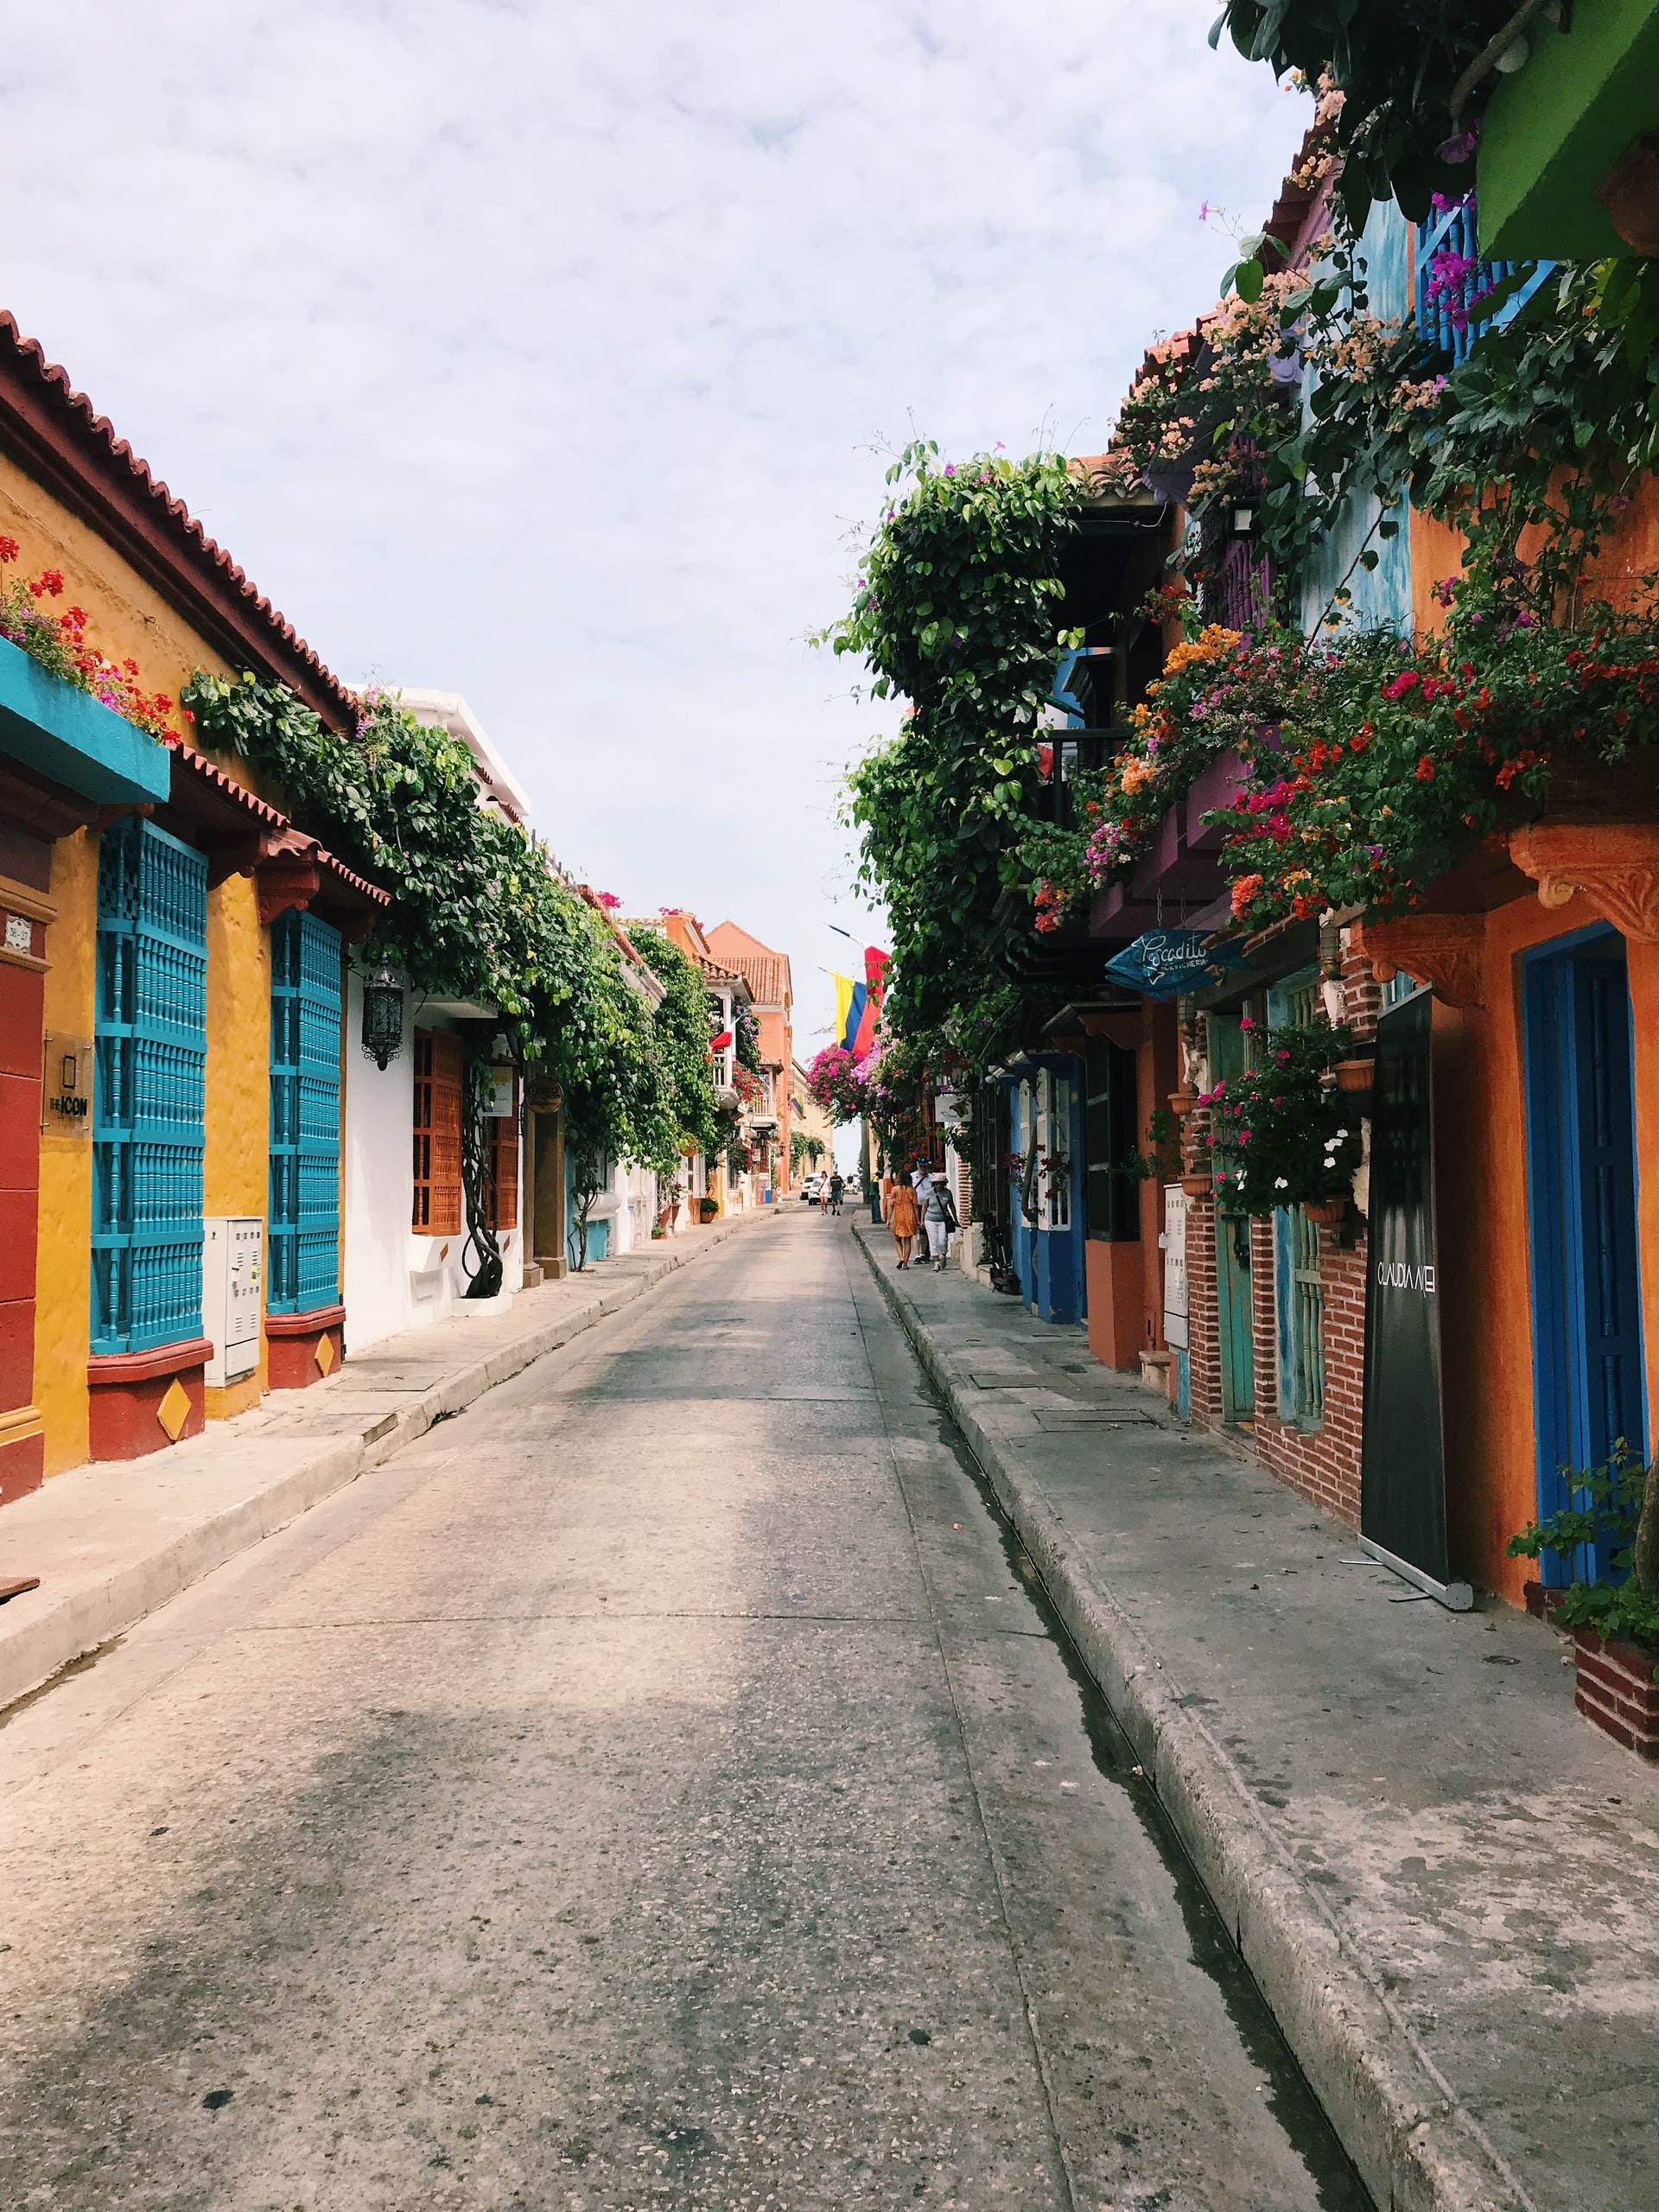 Streets of Cartagena de Indias in Colombia. 